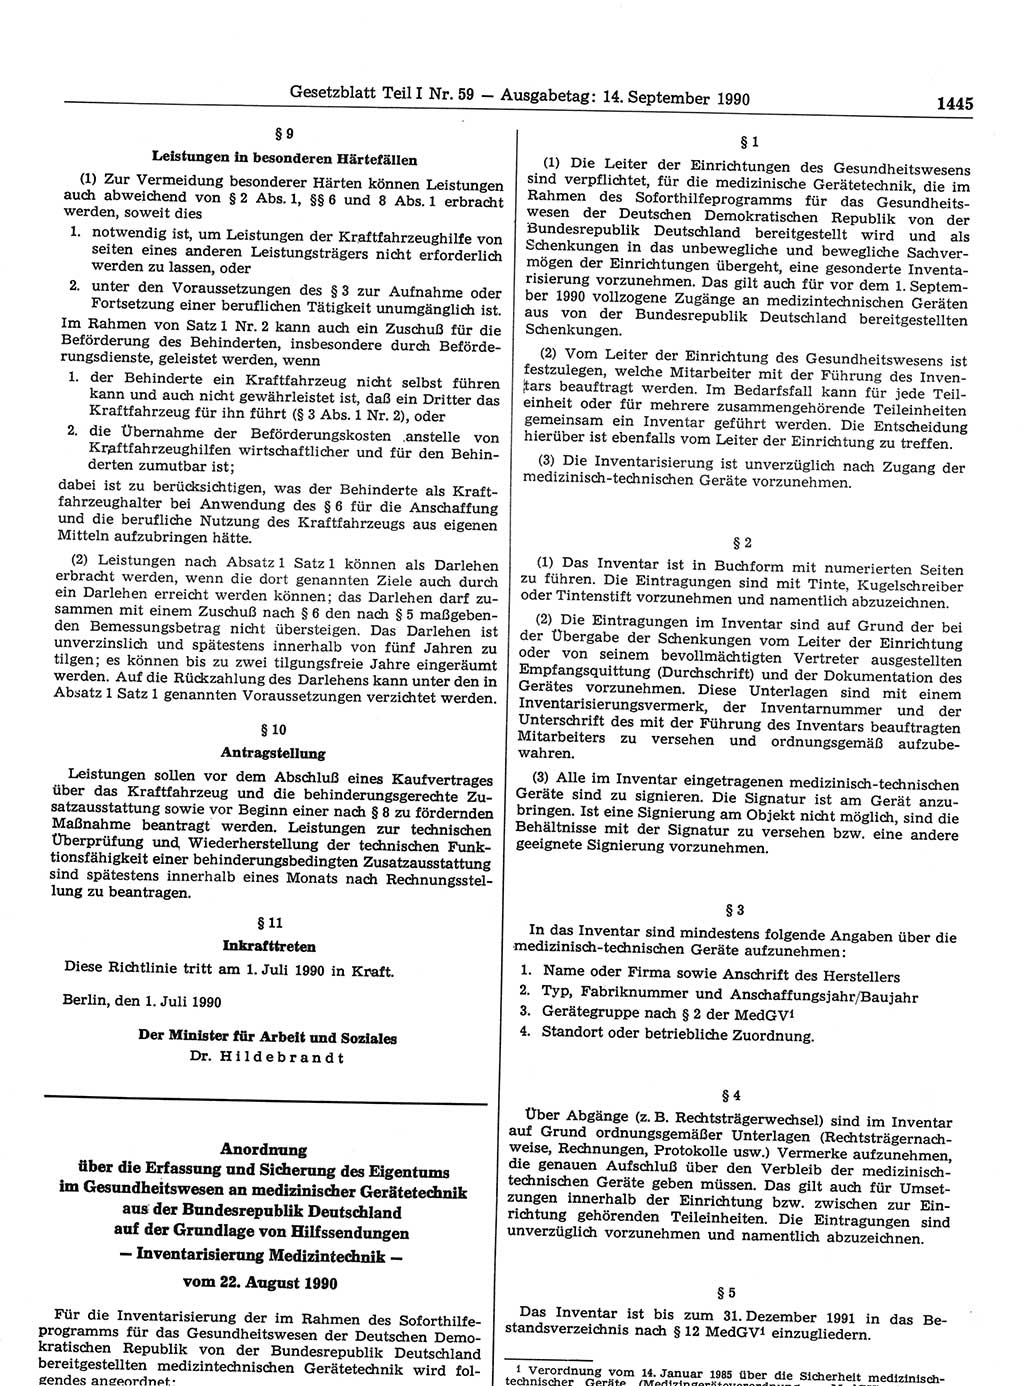 Gesetzblatt (GBl.) der Deutschen Demokratischen Republik (DDR) Teil Ⅰ 1990, Seite 1445 (GBl. DDR Ⅰ 1990, S. 1445)